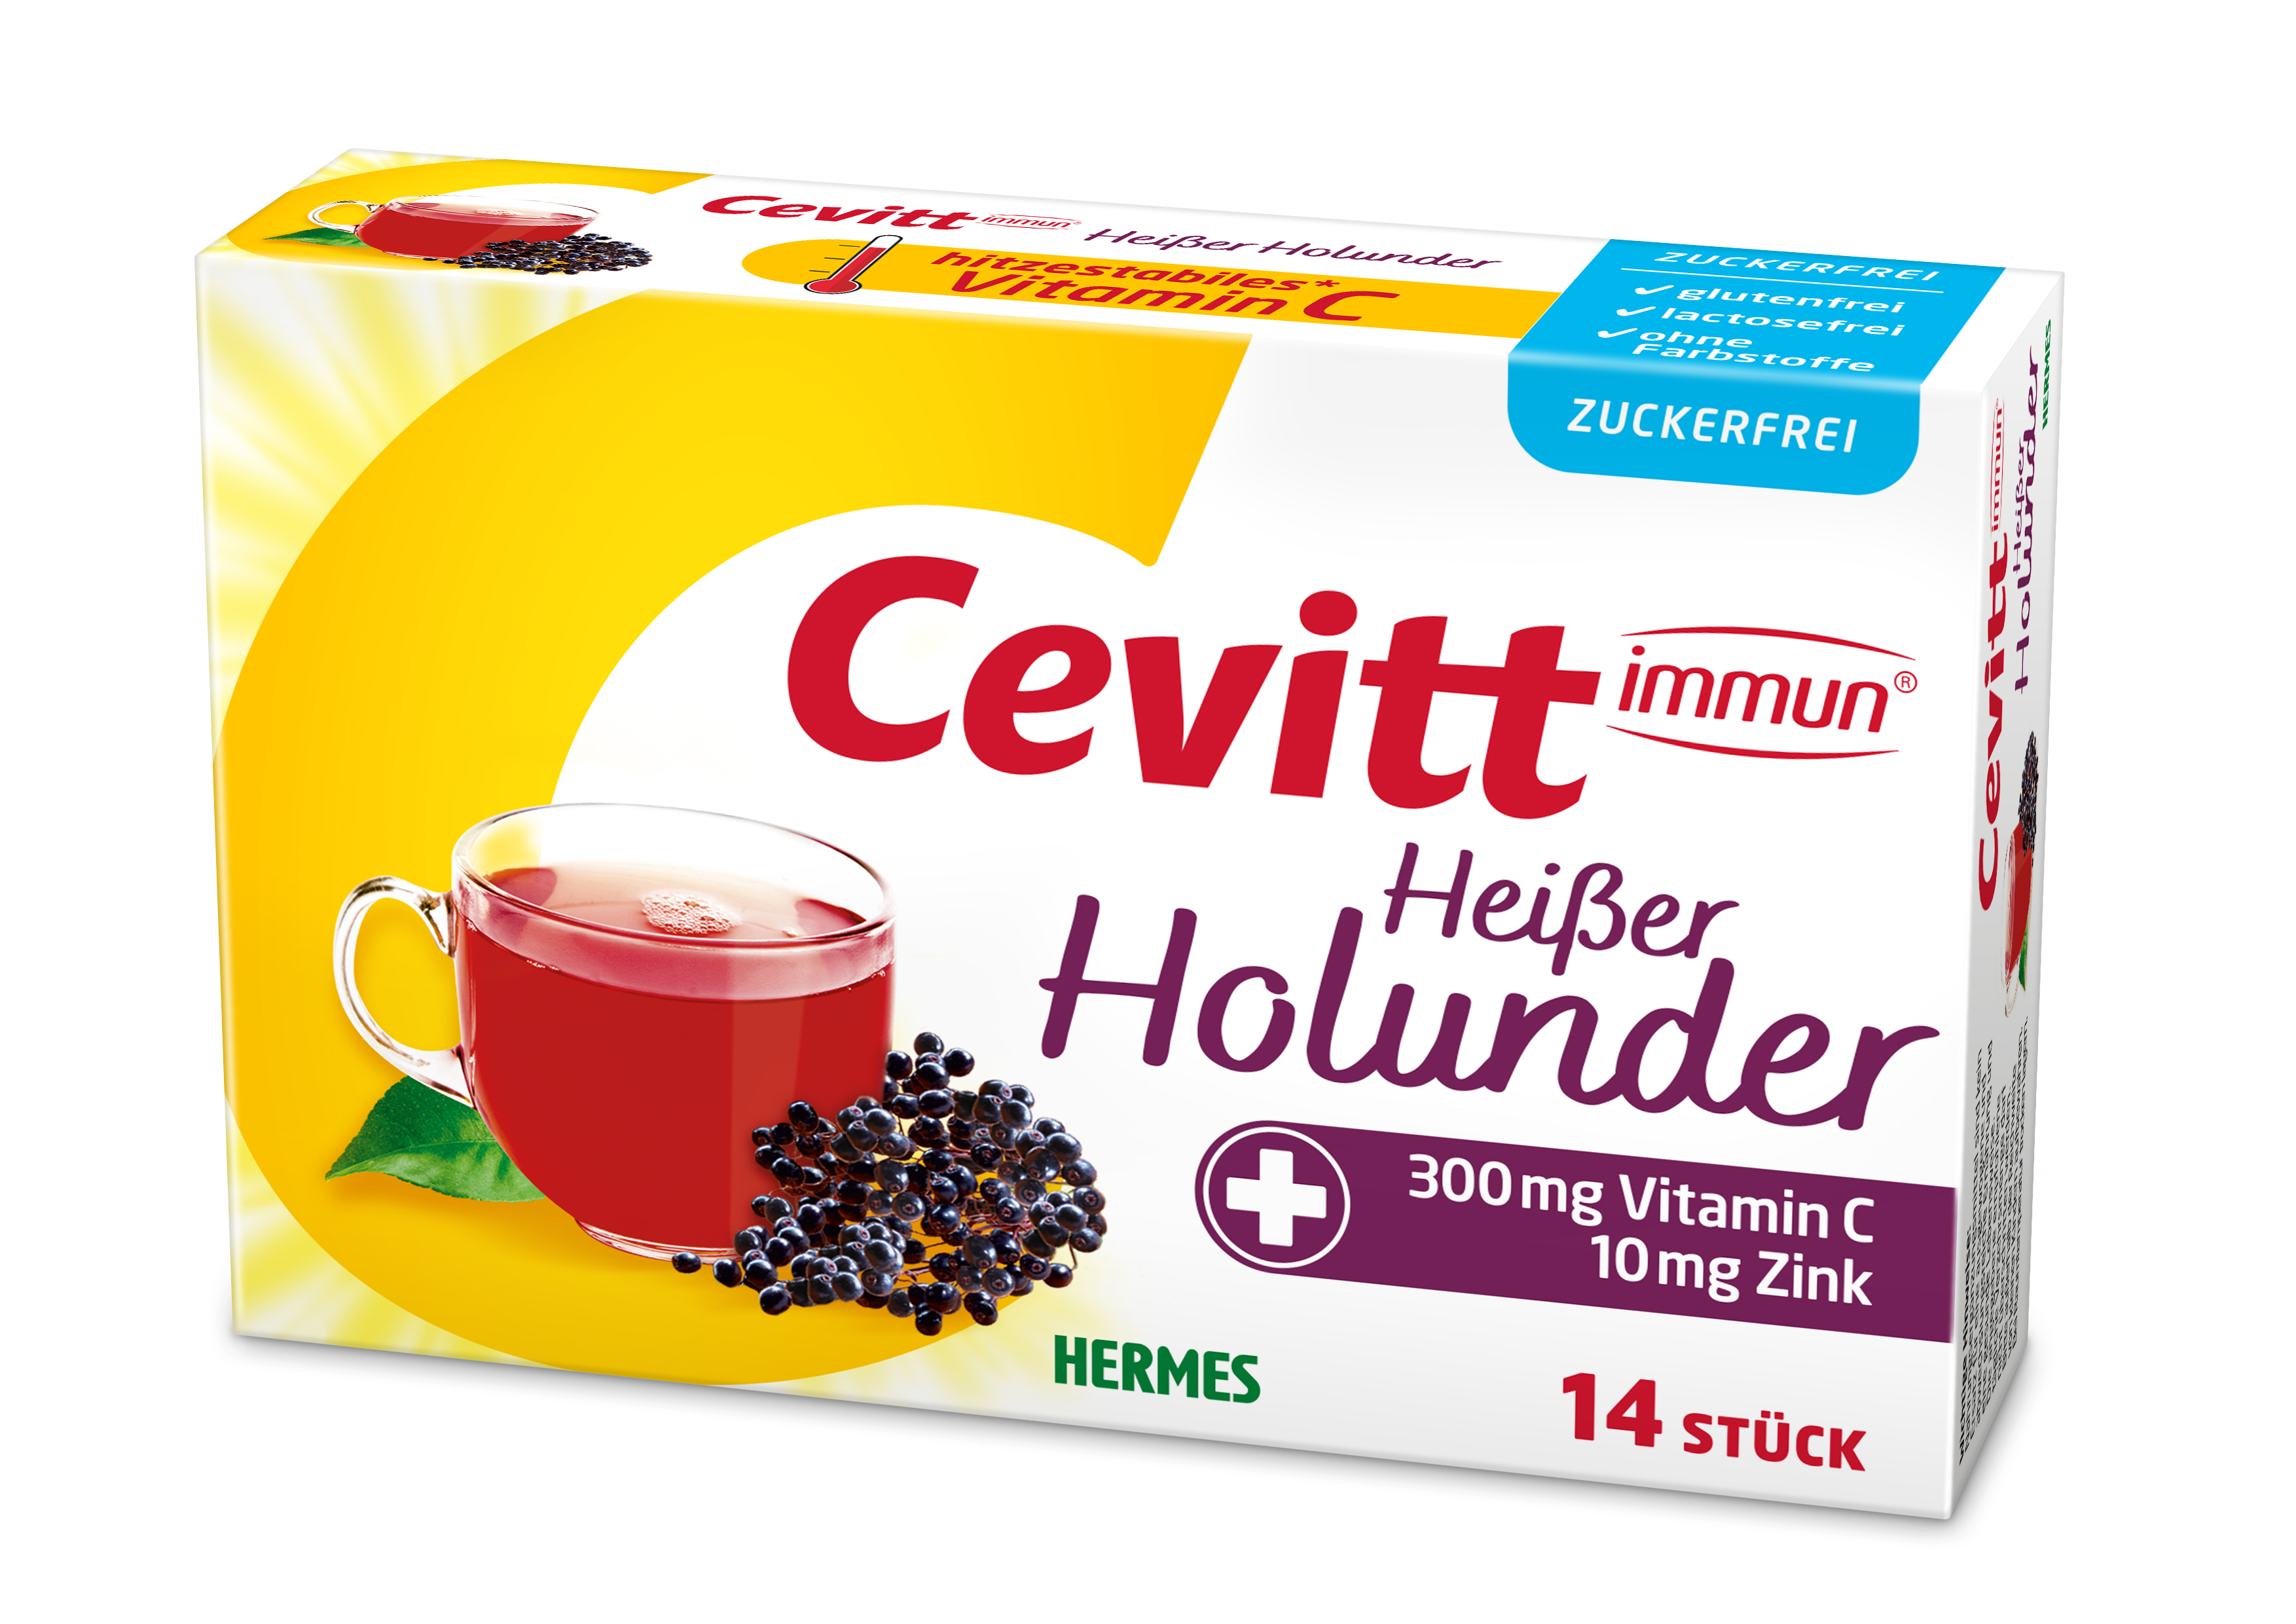 Cevitt immun® Heißer Holunder zuckerfrei 14 ST